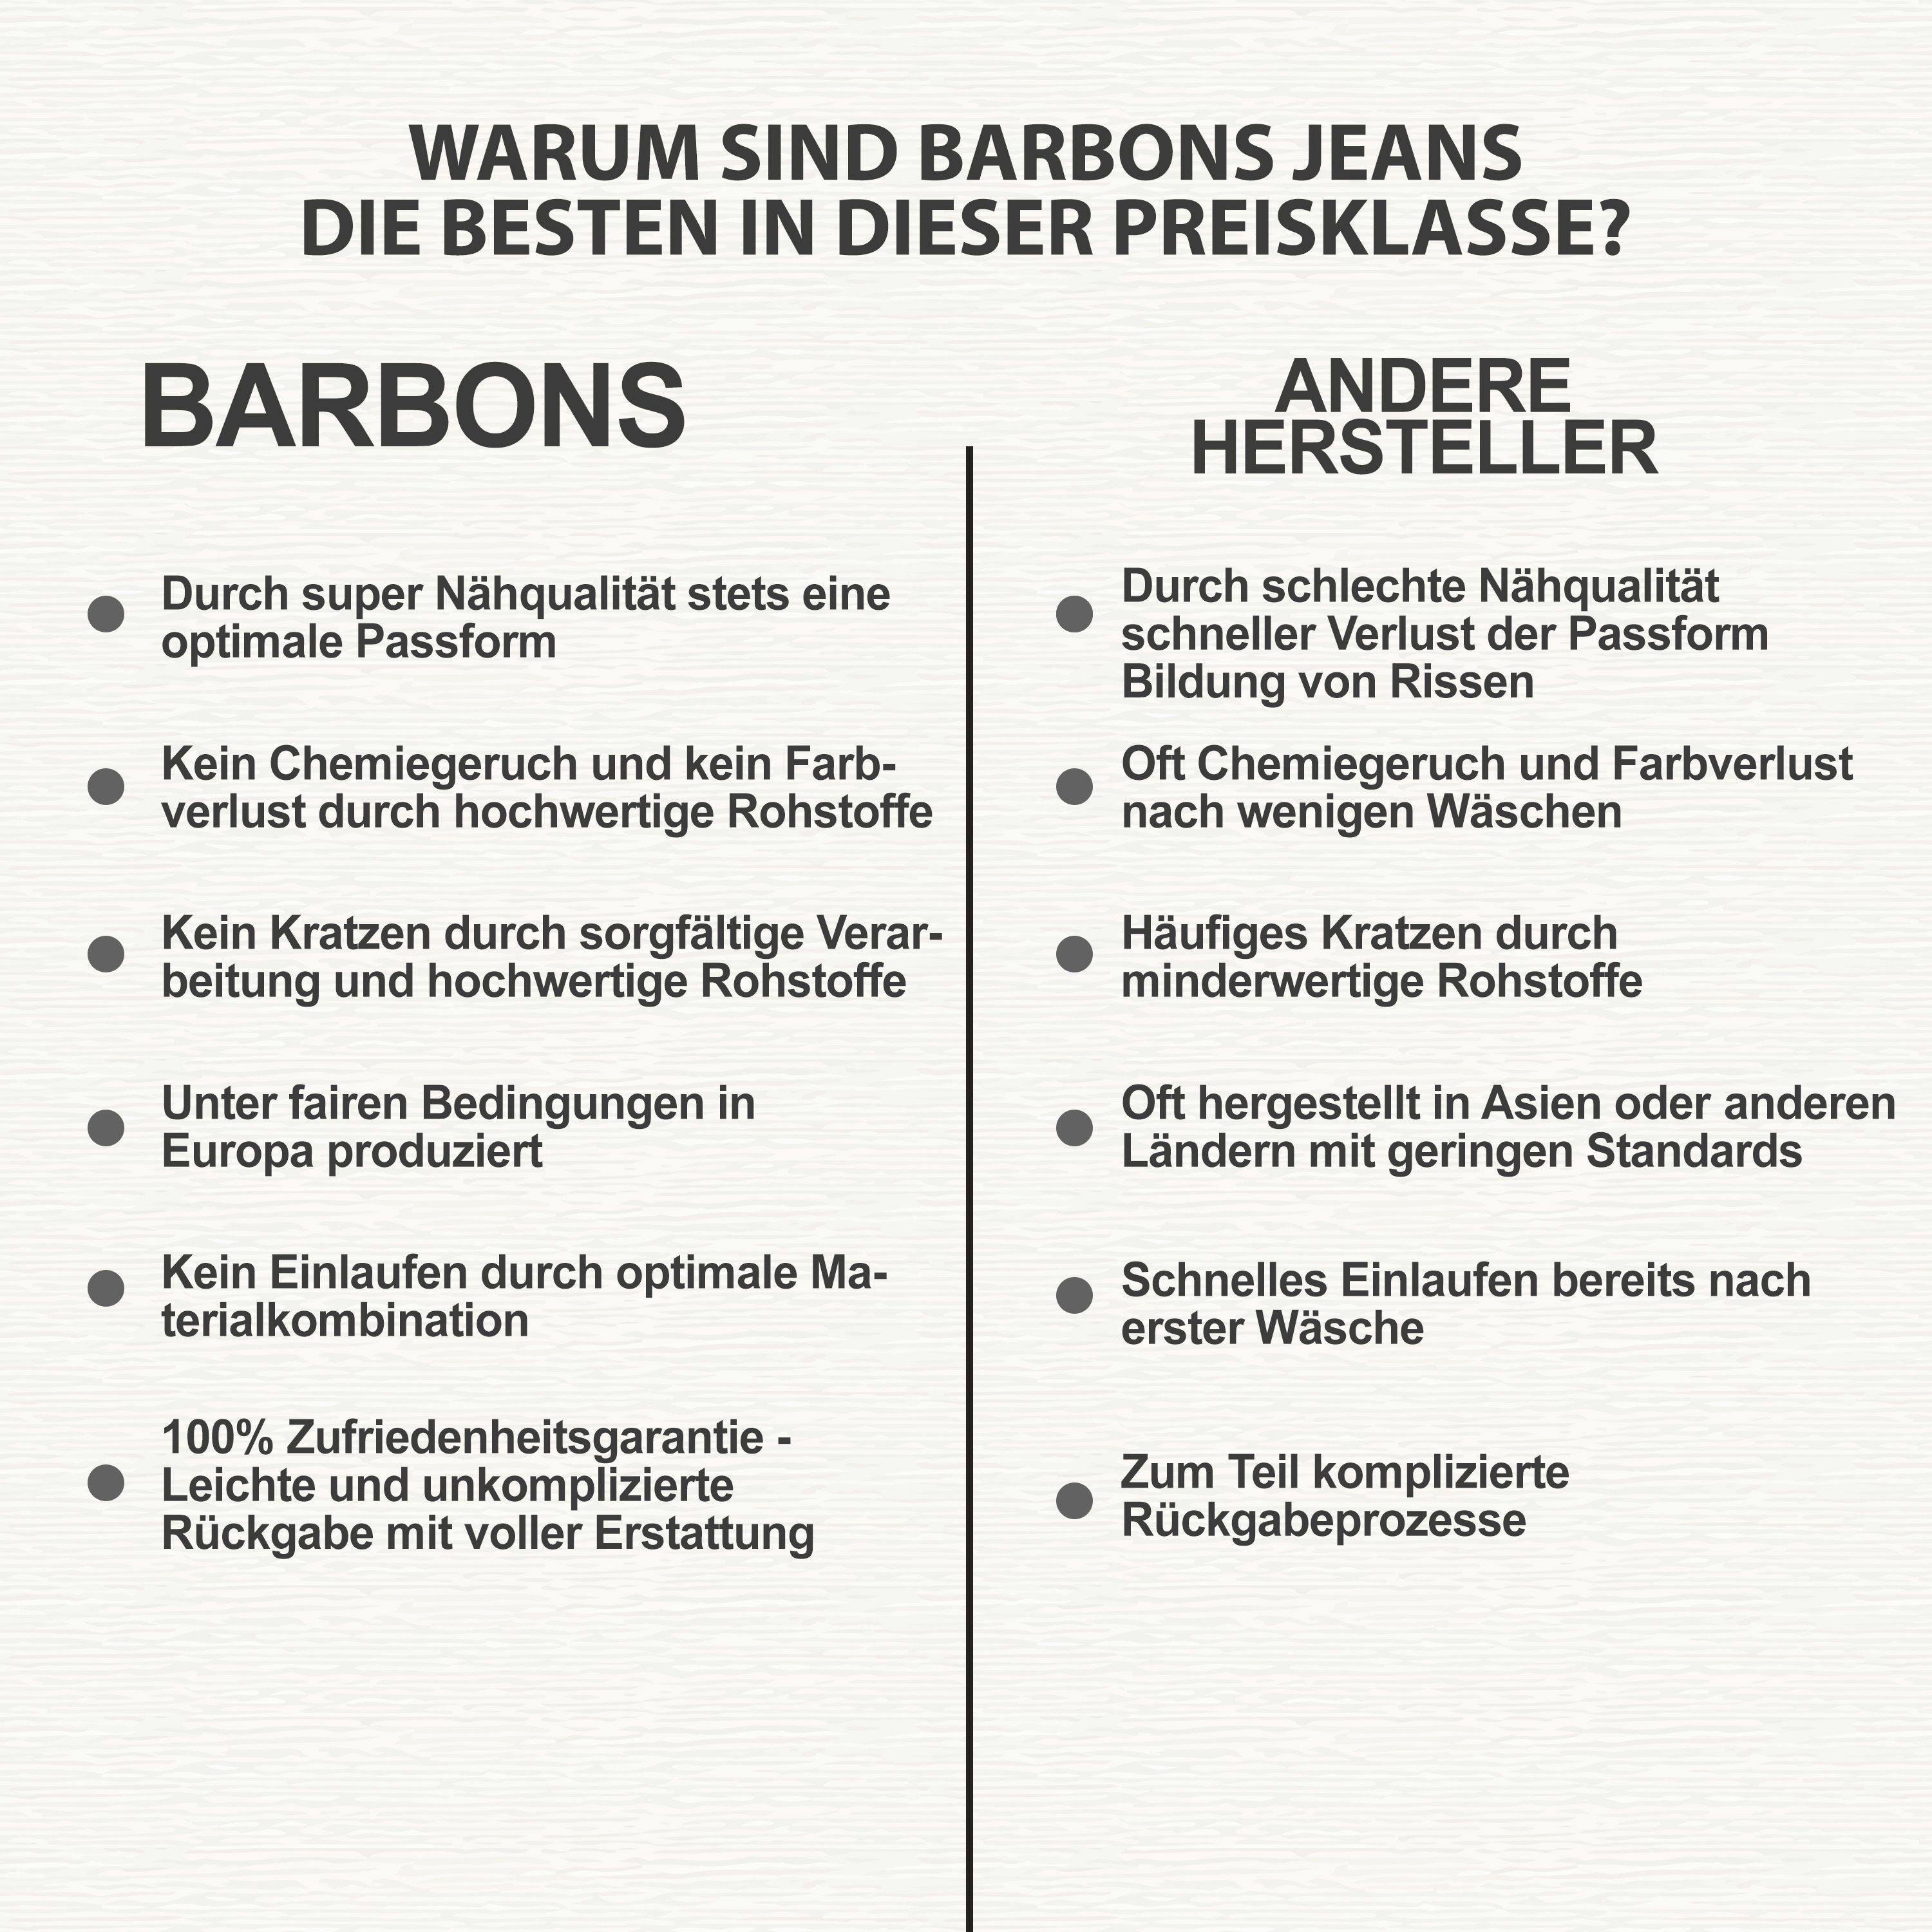 Fit BARBONS Herren 5-Pocket 5-Pocket-Jeans Design Regular 04-Grau